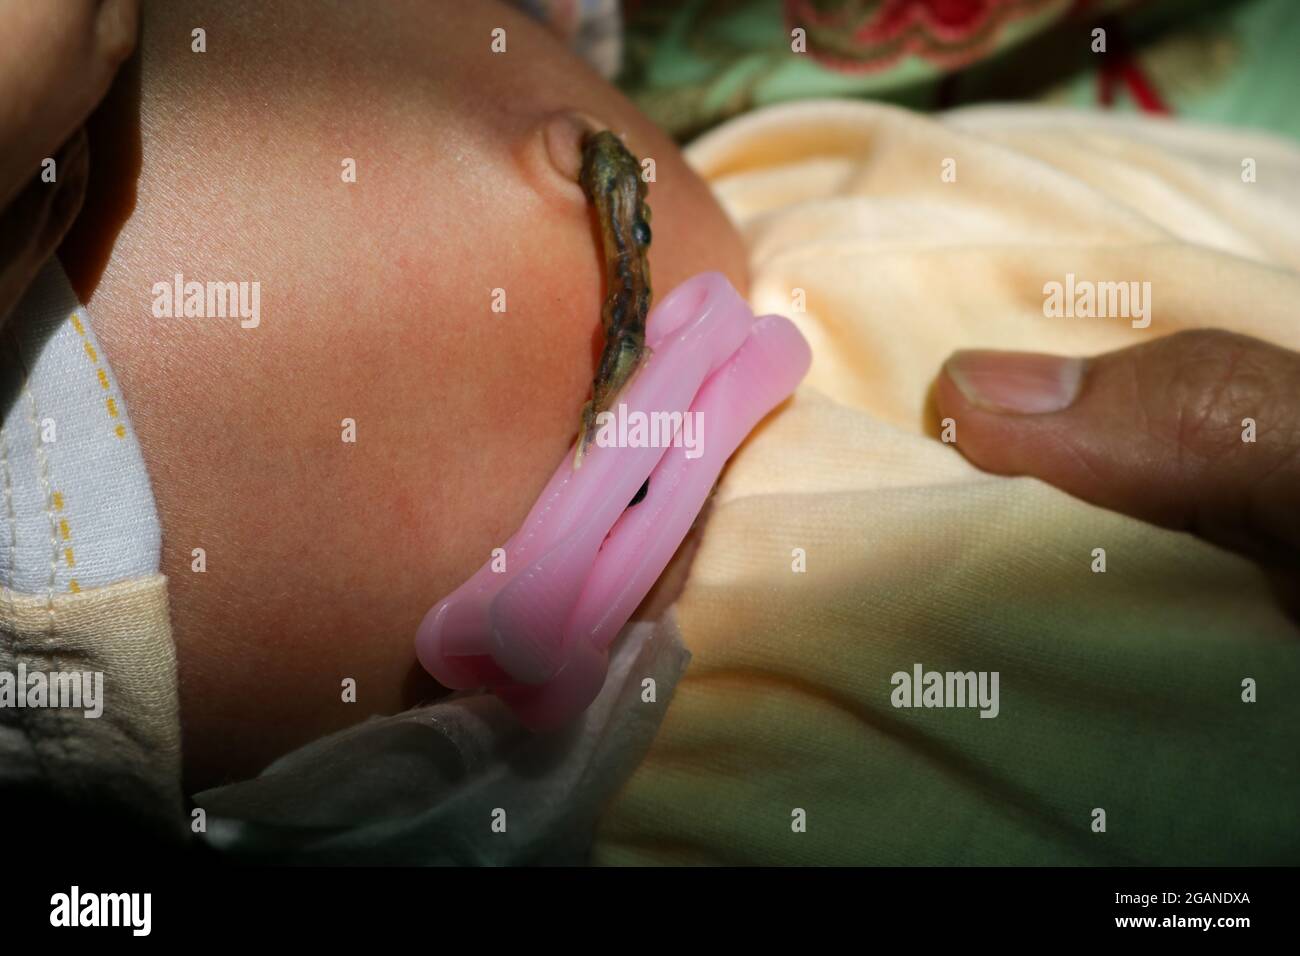 Nabelschnur des Neugeborenen, das am Bauchnabel befestigt ist Stockfoto